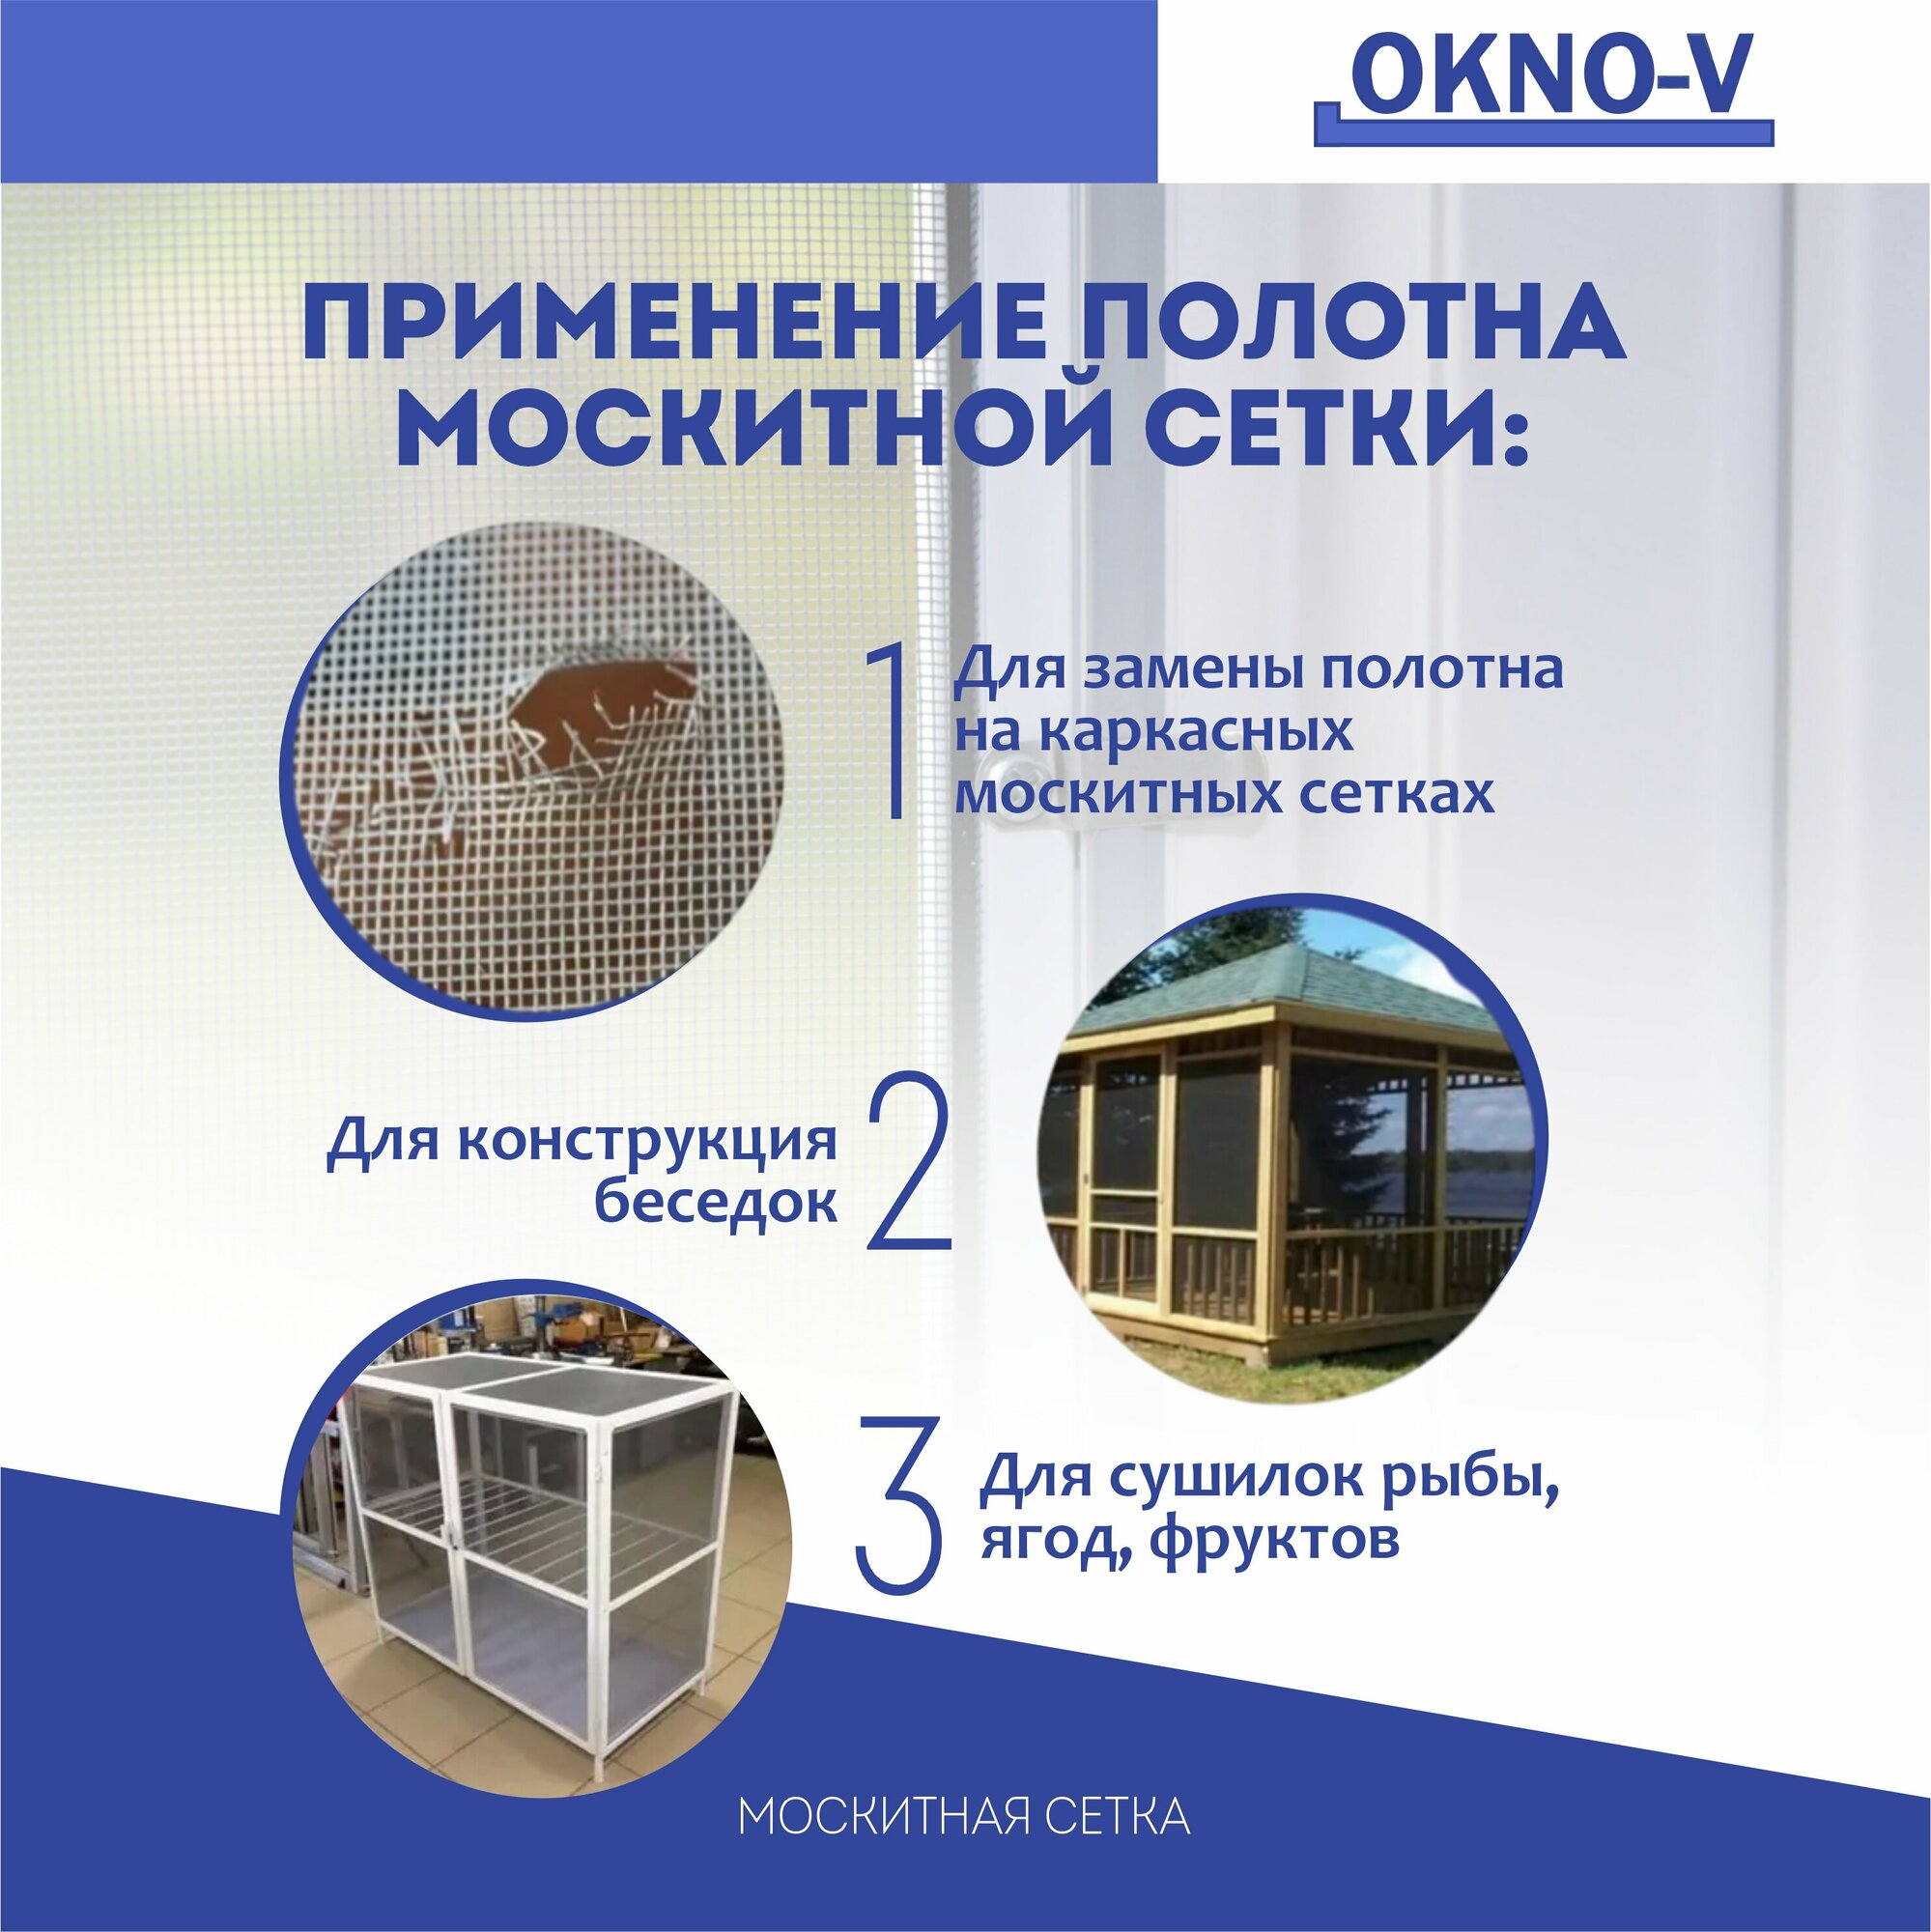 Москитная сетка серая "OKNO-V" - полотно 1,6 м*3м